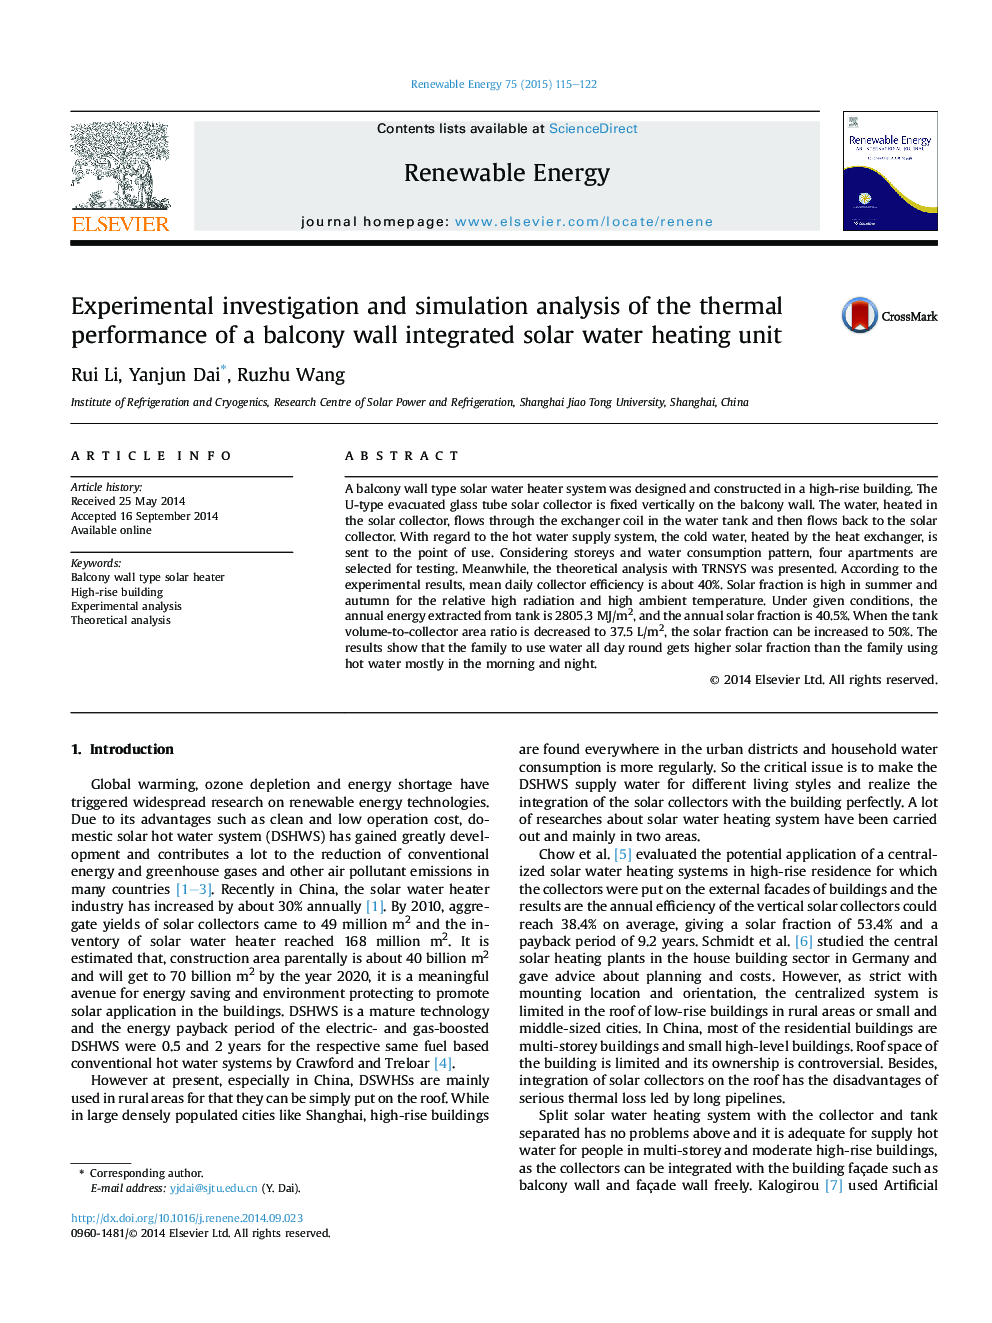 بررسی تجربی و تجزیه و تحلیل شبیه سازی عملکرد حرارتی یک دیوار بالکن یکپارچه واحد خورشیدی آب گرم 